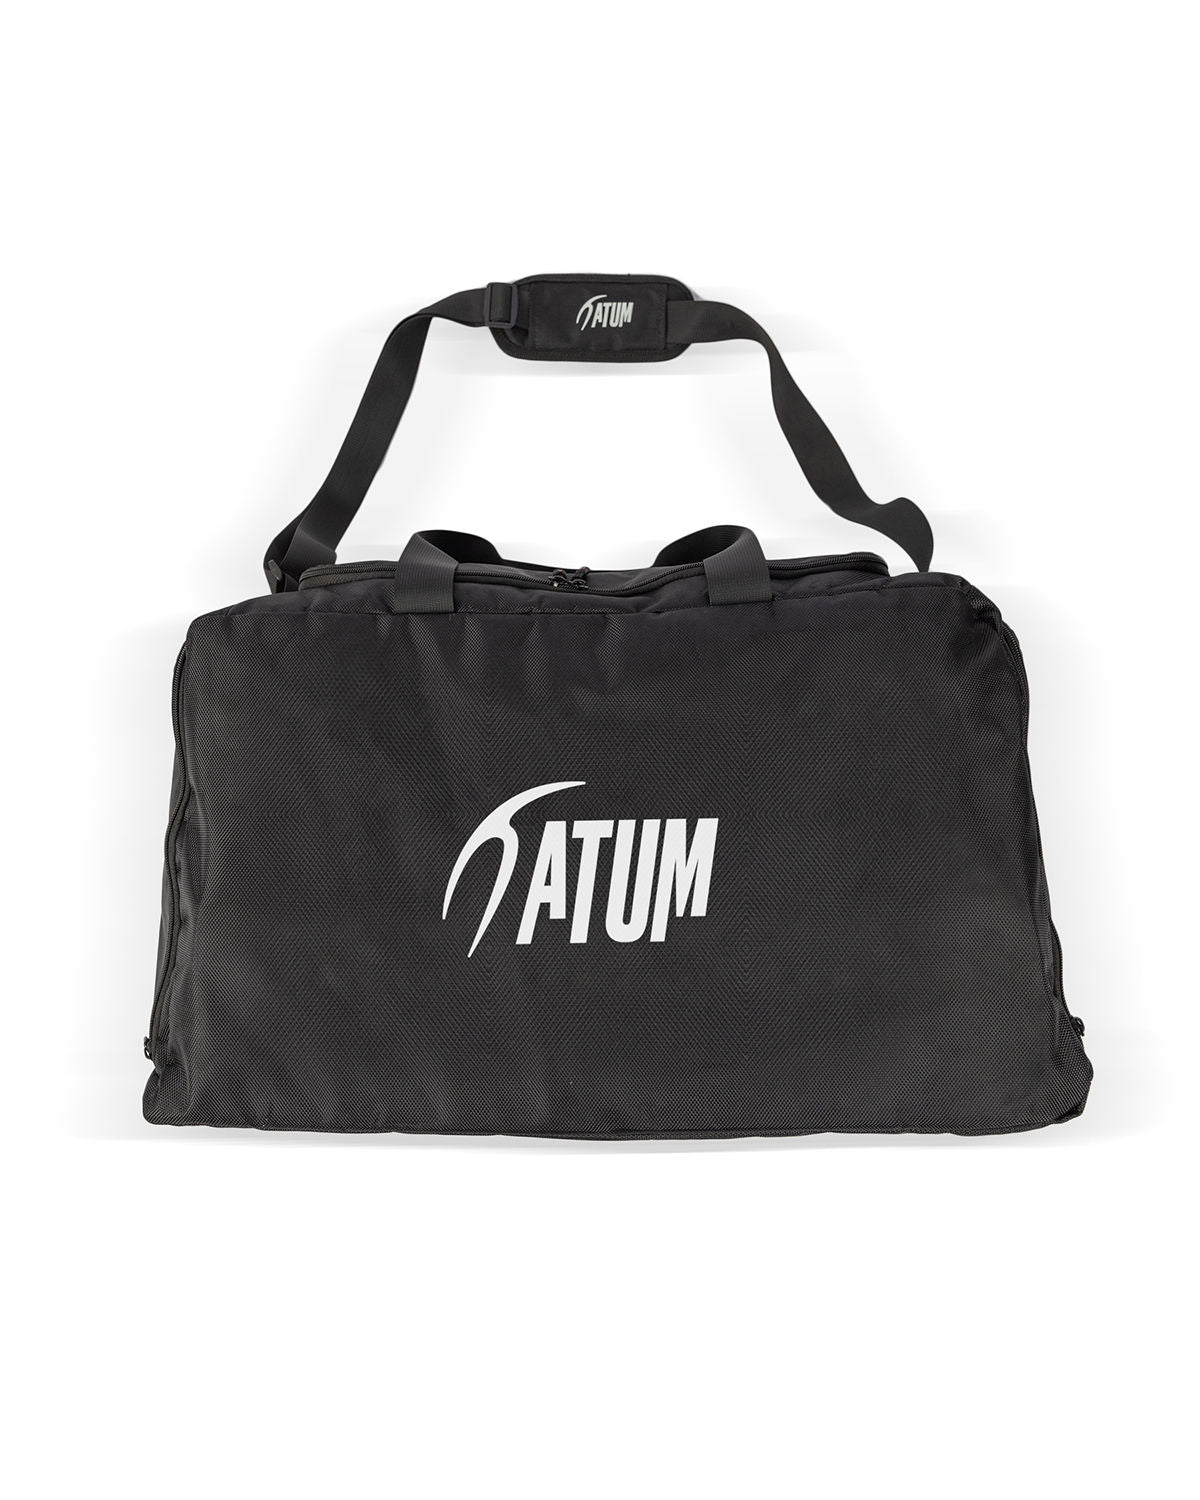 Atum's training duffel bag